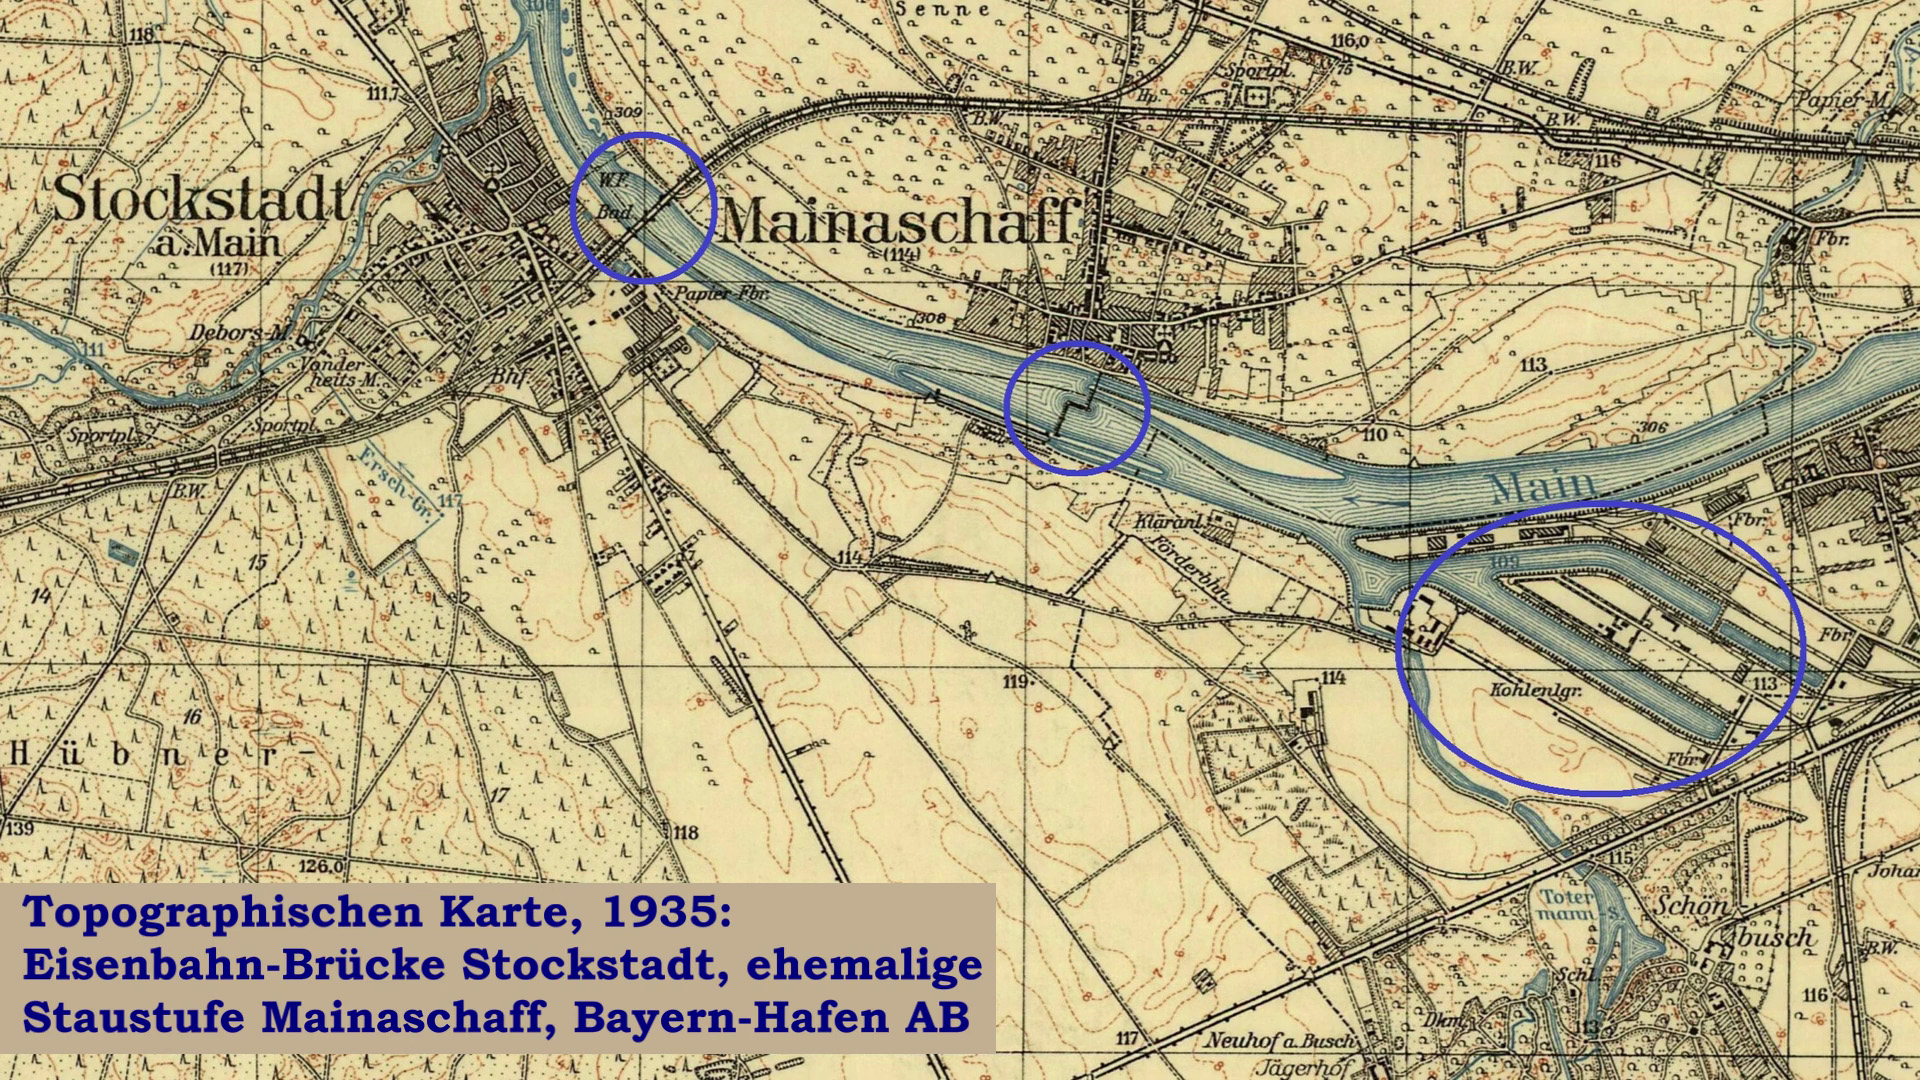 Topographische Karte von 1935 Stockstadt, Mainaschaff und Bayern-Hafen AG